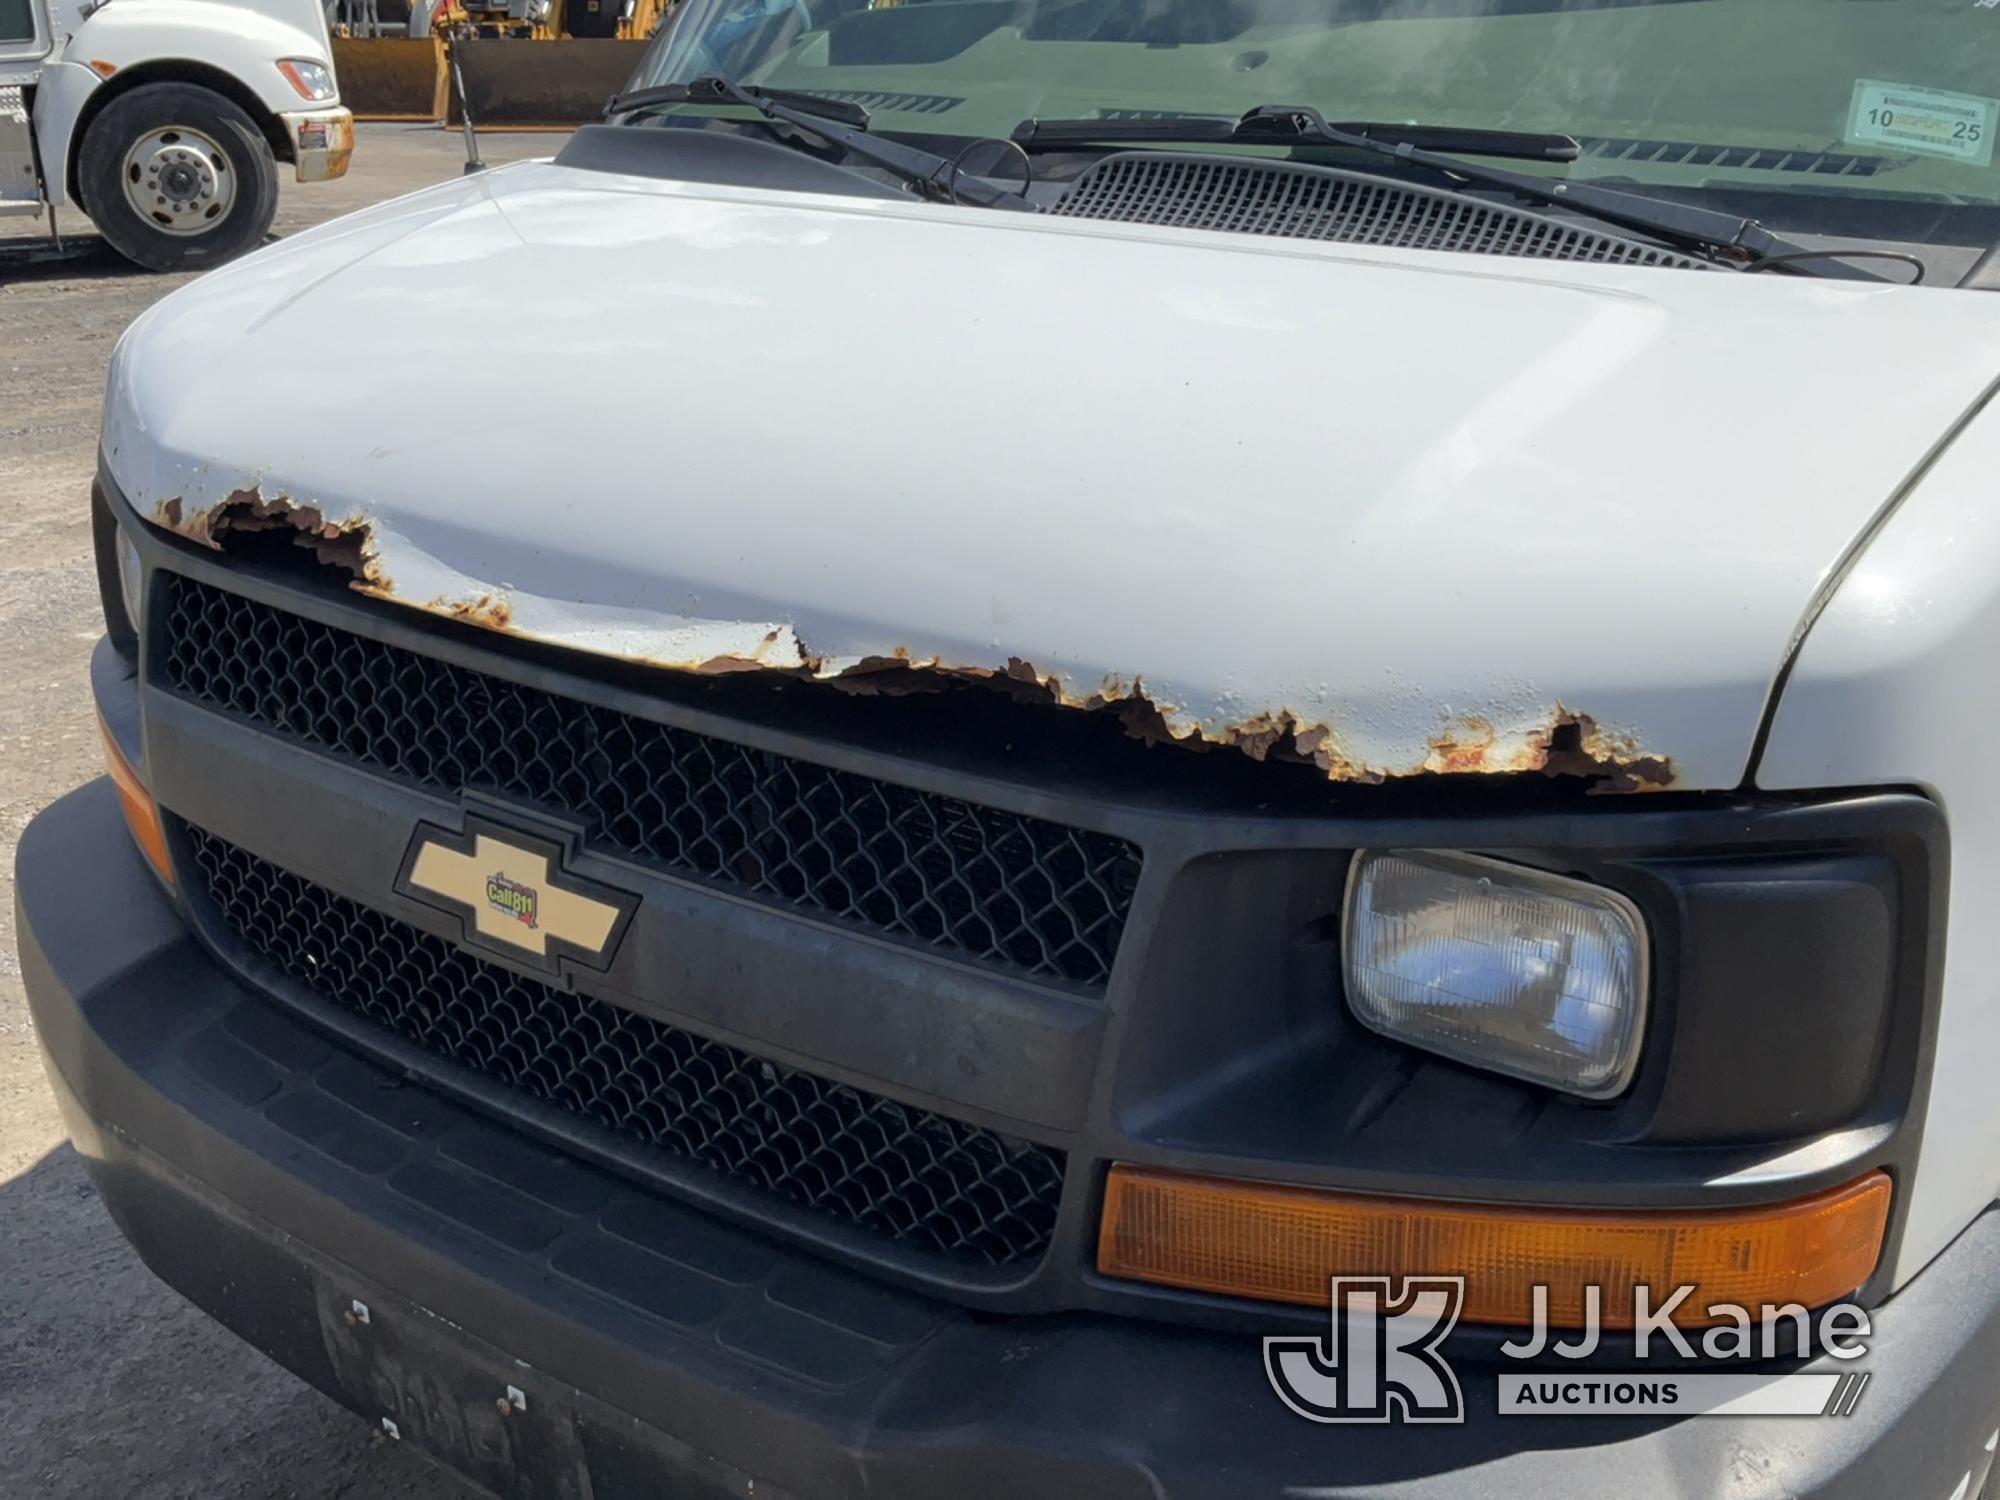 (Rome, NY) 2013 Chevrolet Express G2500 Cargo Van Runs & Moves, Body & Rust Damage